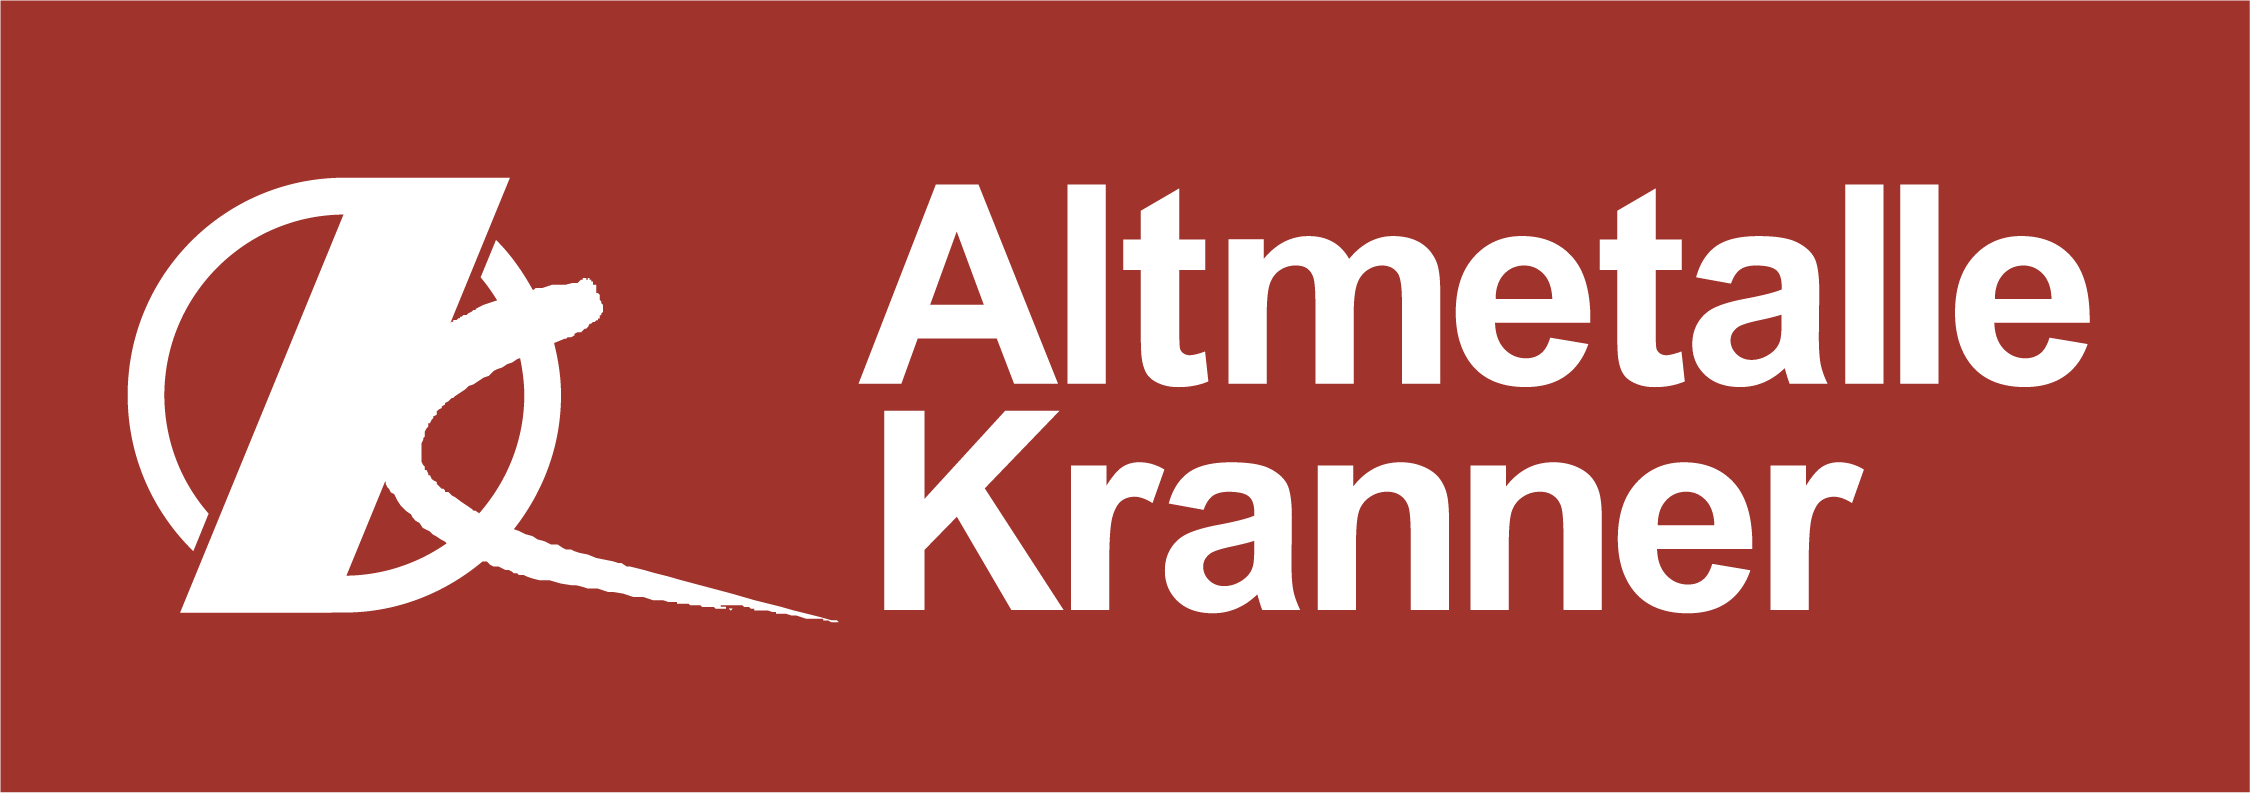 Altmetalle Kranner Logo